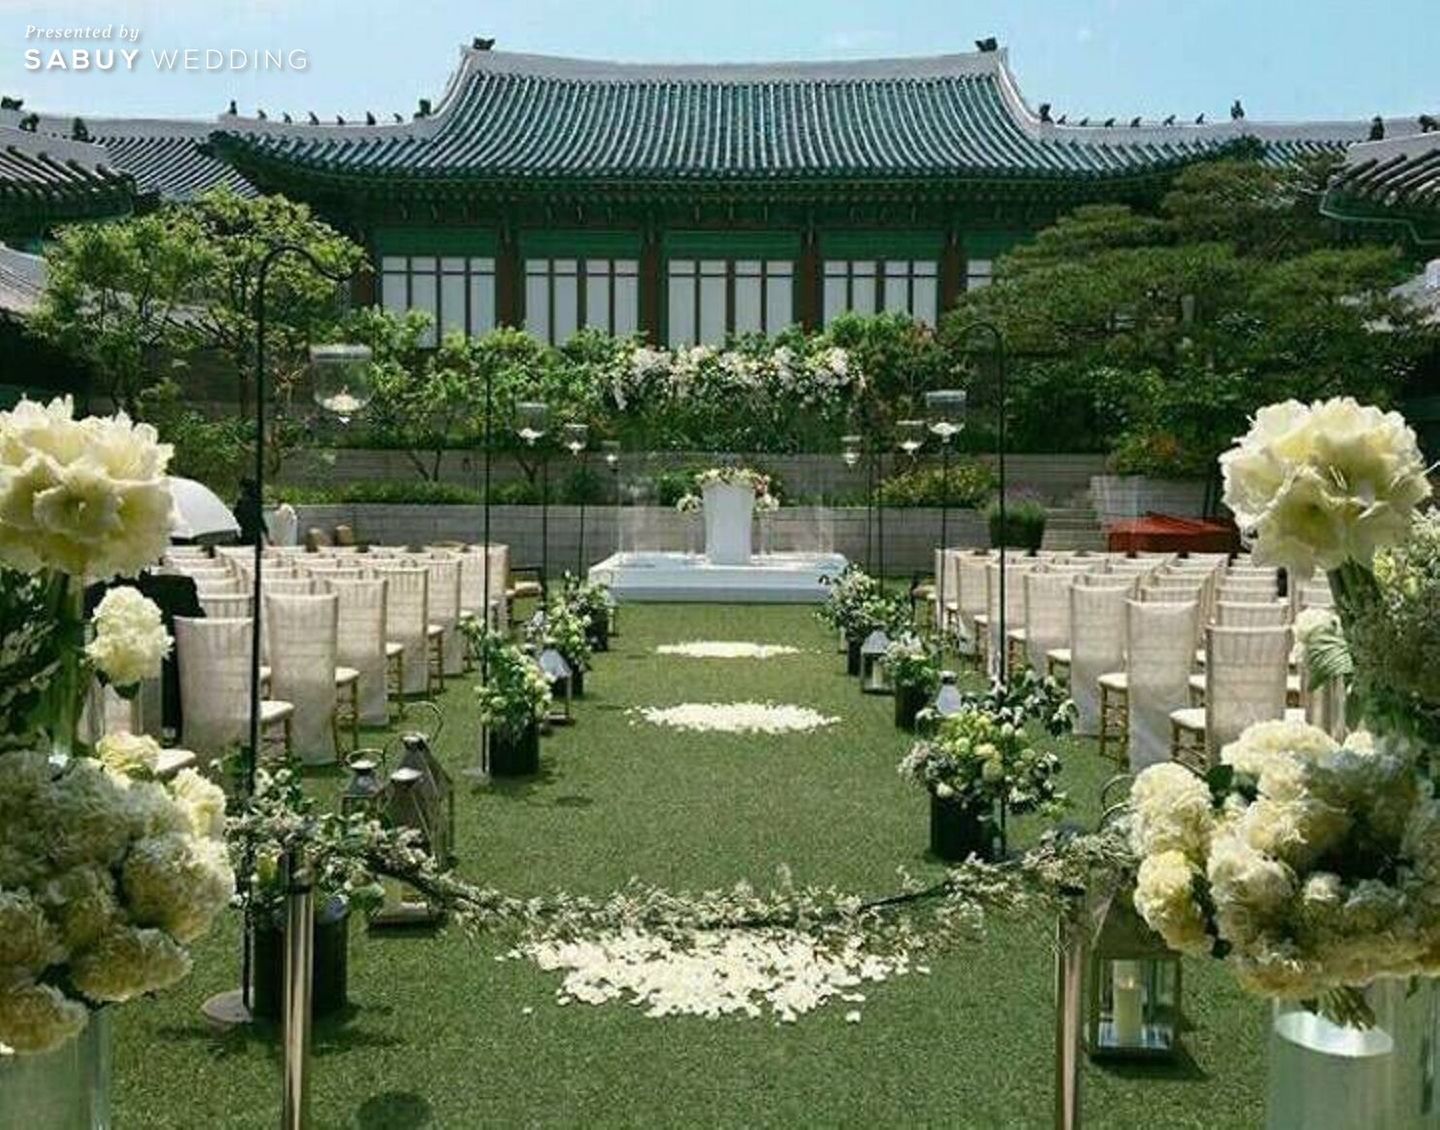 งานแต่งงาน,สถานที่แต่งงาน,สถานที่จัดงานแต่งงาน,ตกแต่งงานแต่ง,จัดดอกไม้งานแต่ง,เกาหลีใต้ จิ้น อิน ฟินกระจาย งานแต่งสุดหวาน จุงกิ-เฮเคียว ดีต่อใจแฟนคลับสุดๆ